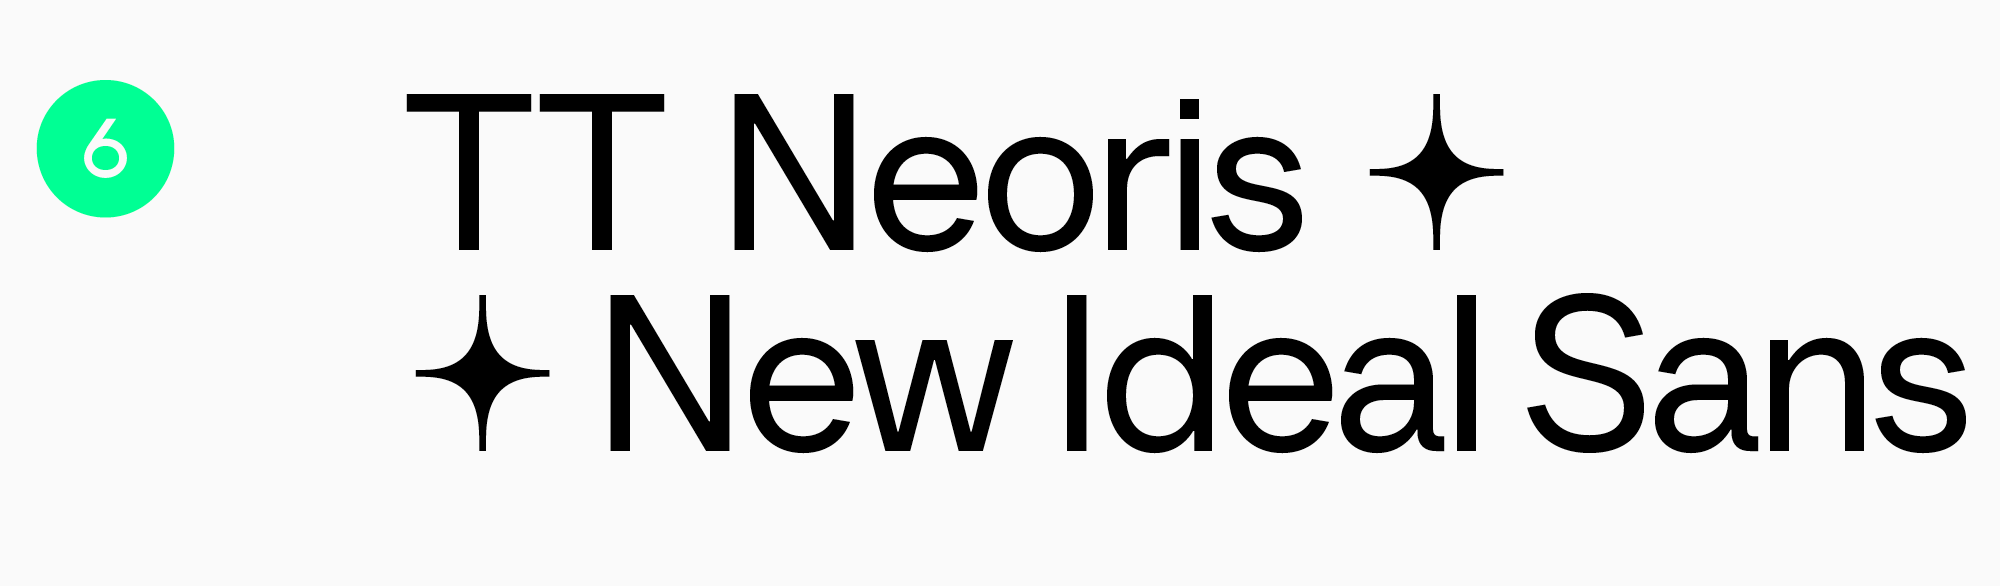 TT Neoris best font for a poster